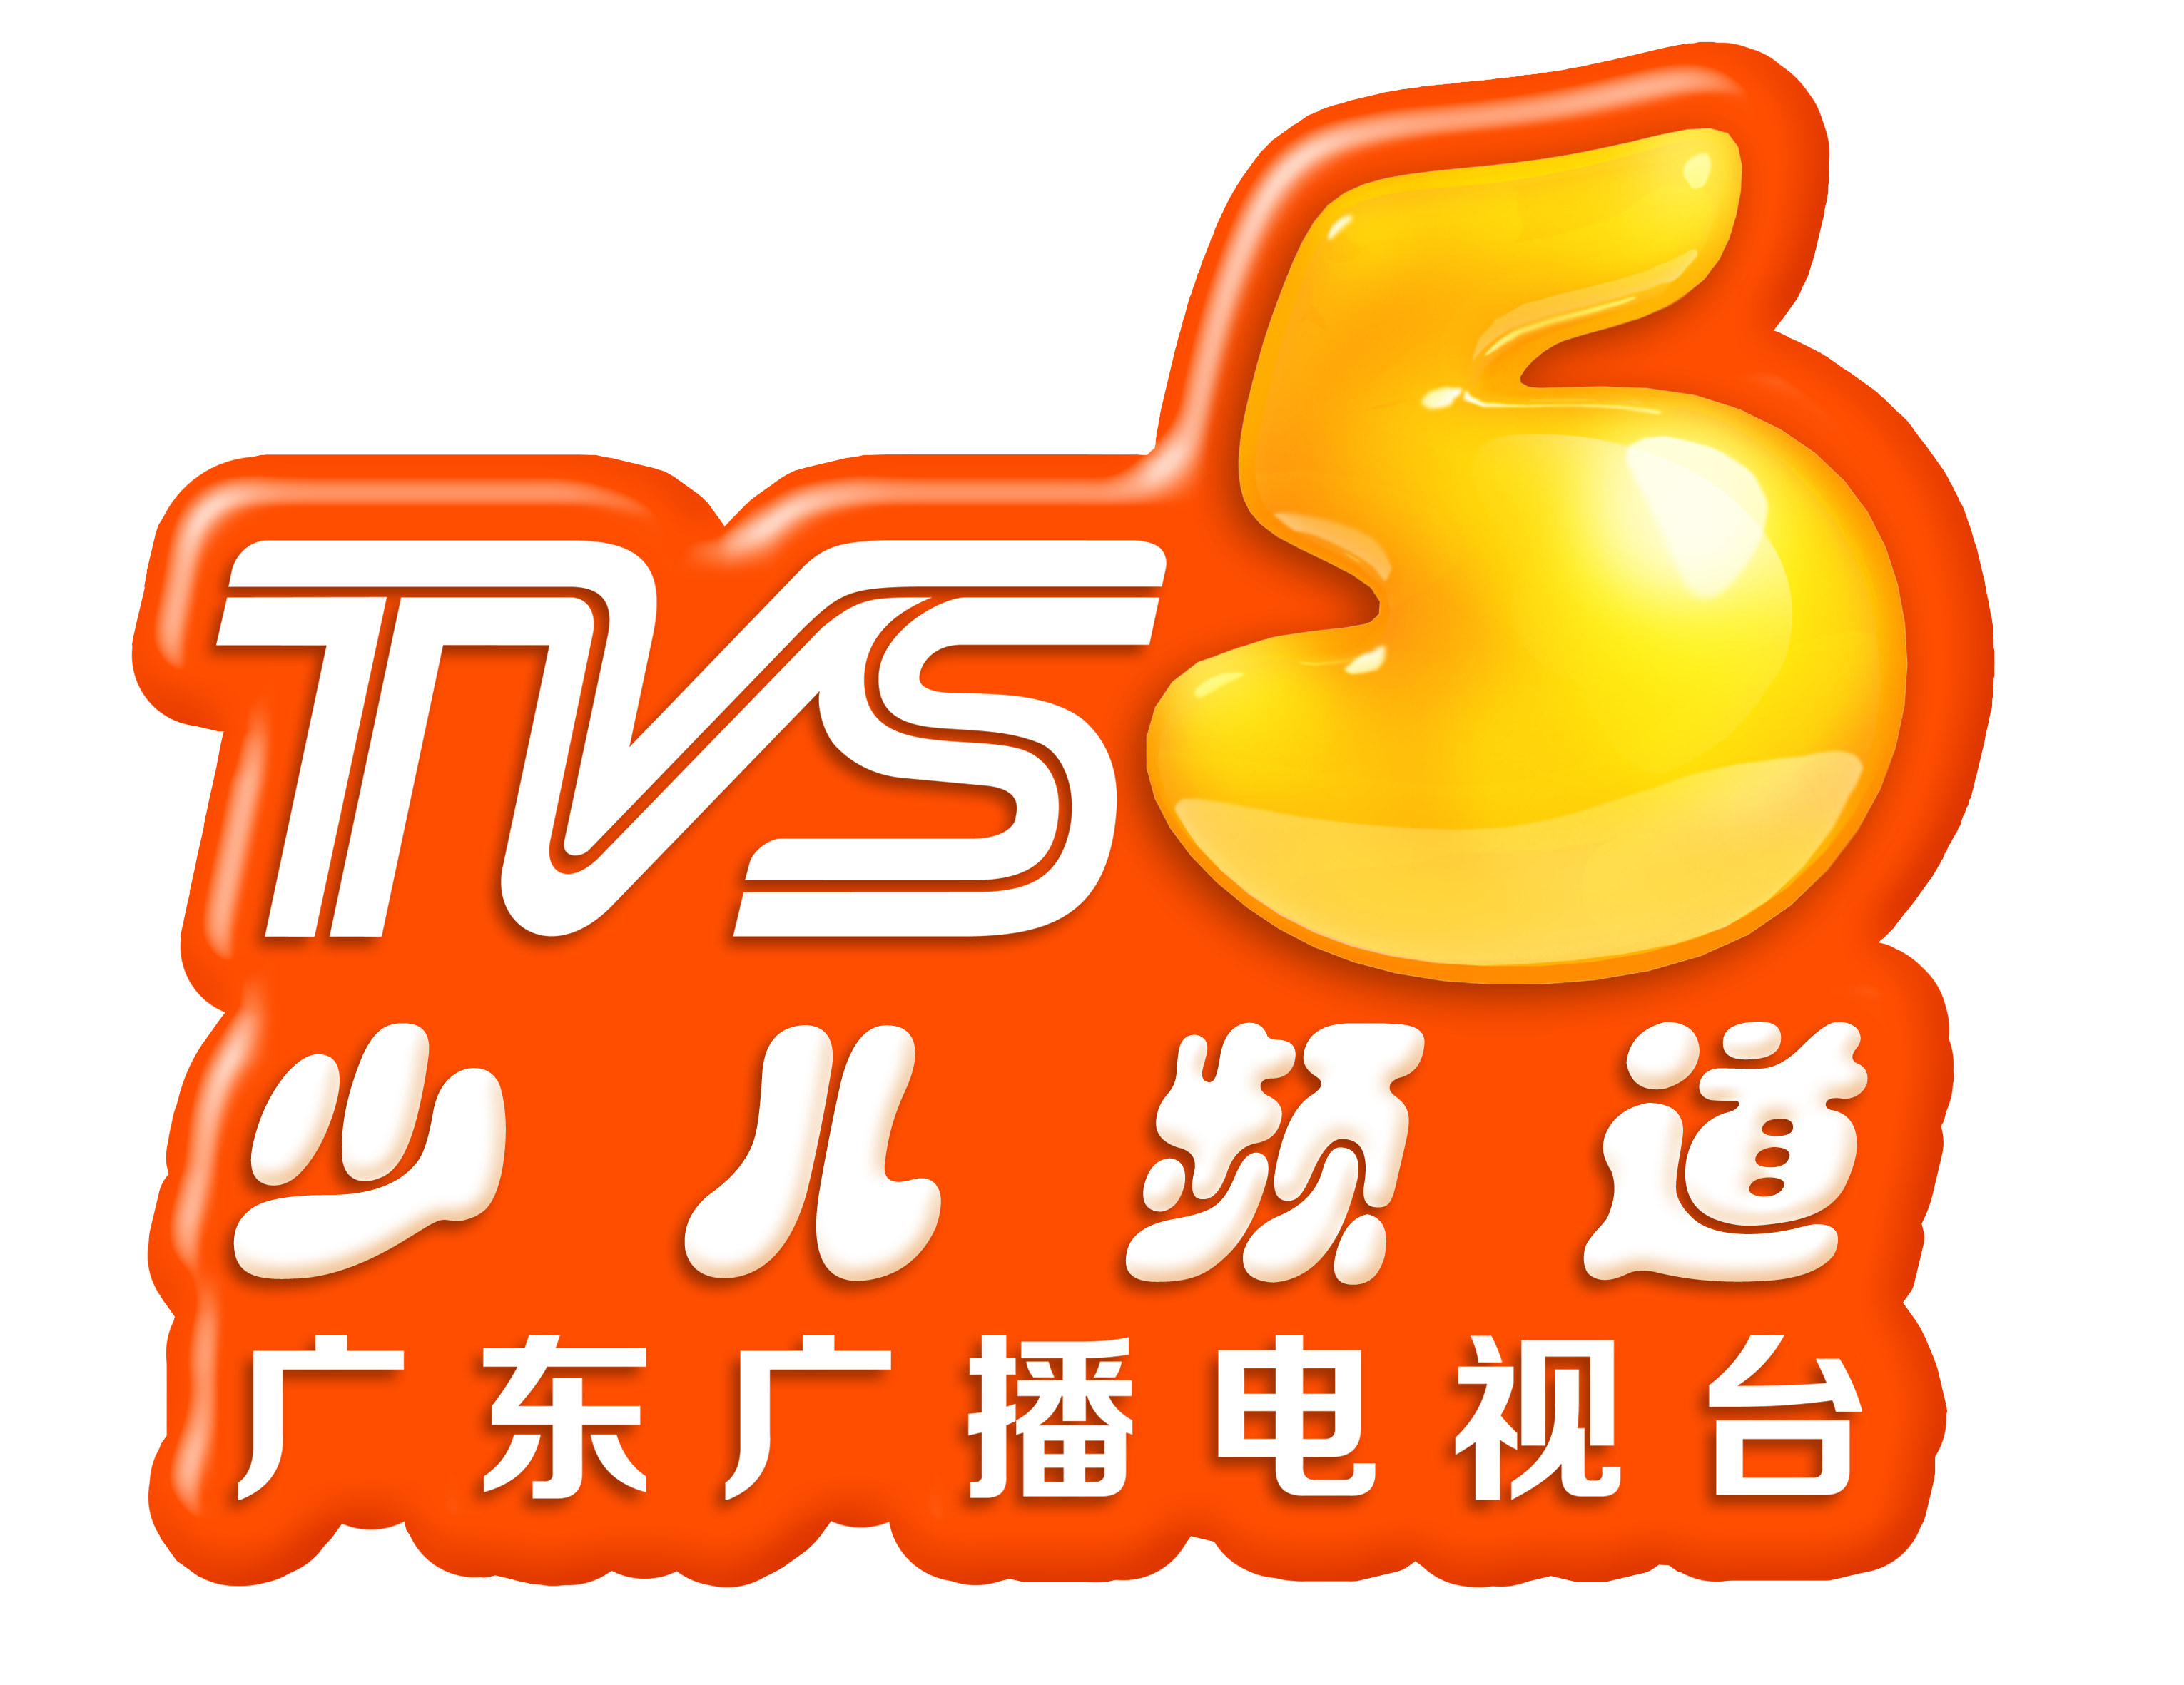 廣東廣播電視台少兒頻道(TVS-5)